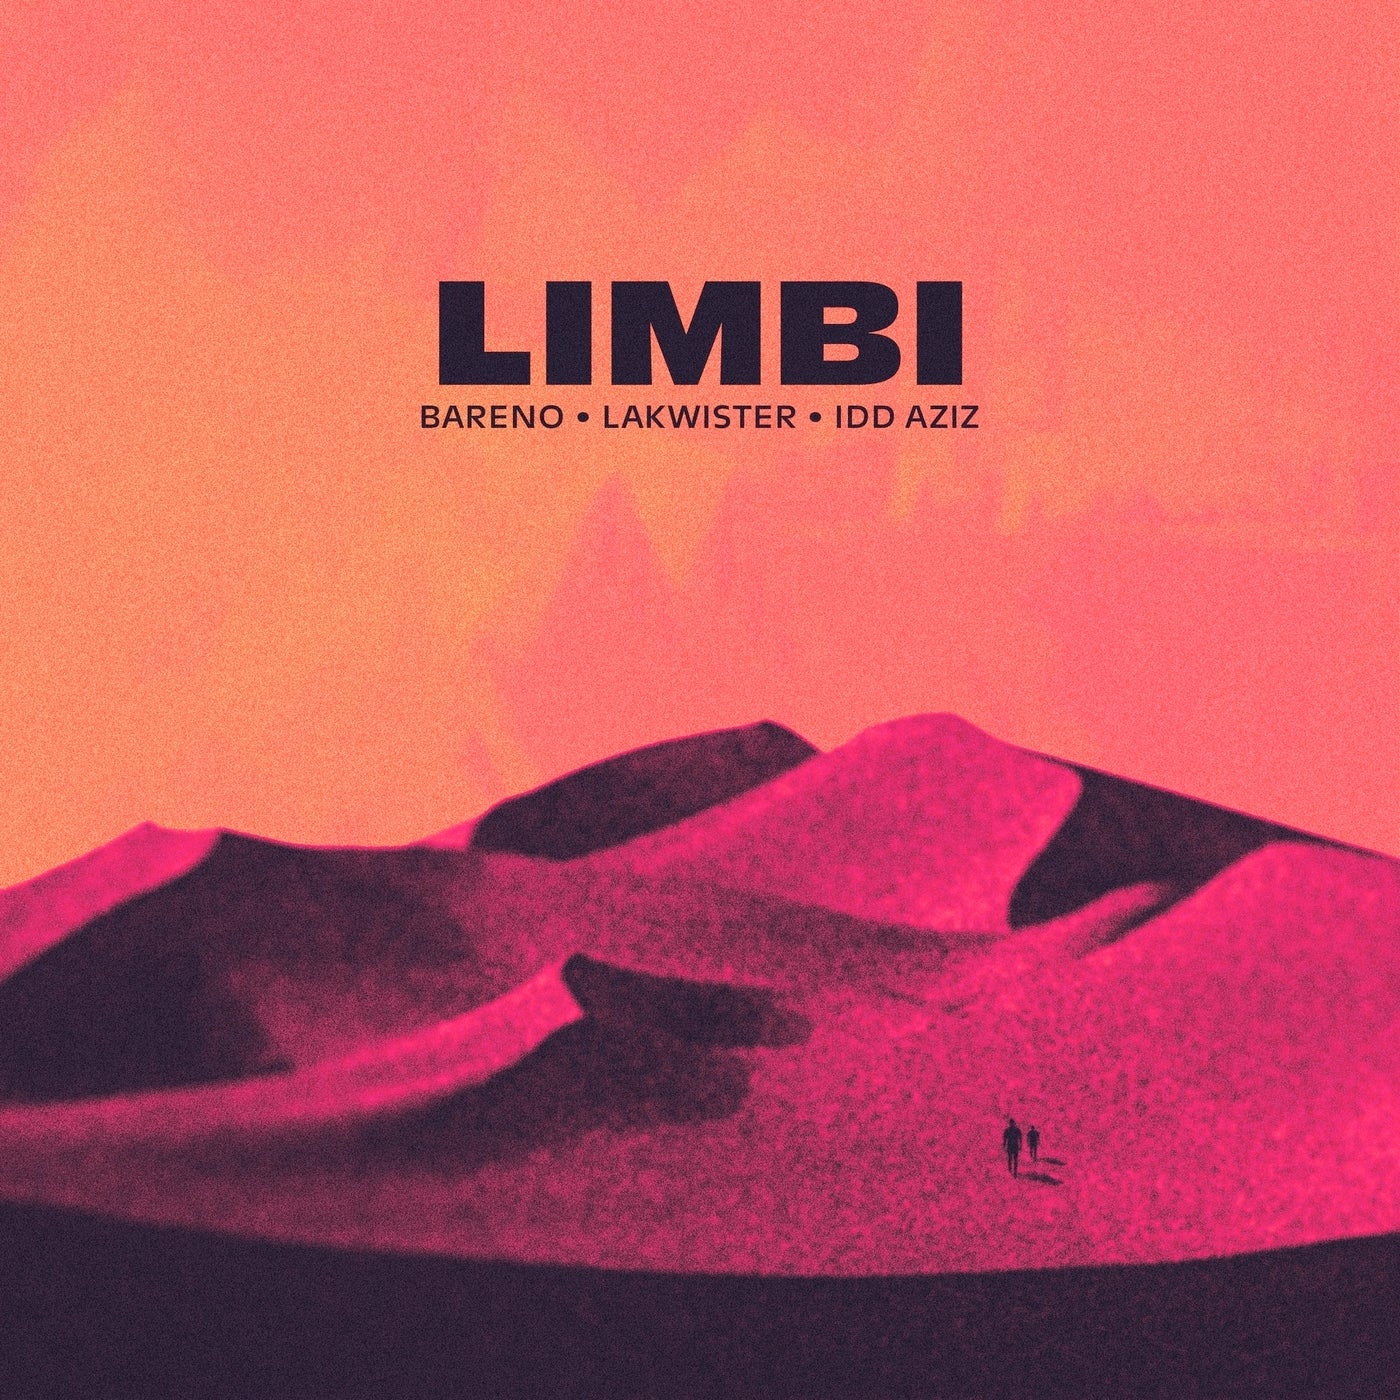 Idd Aziz, Lakwister & Bareno - Limbi on Bareno Music Production